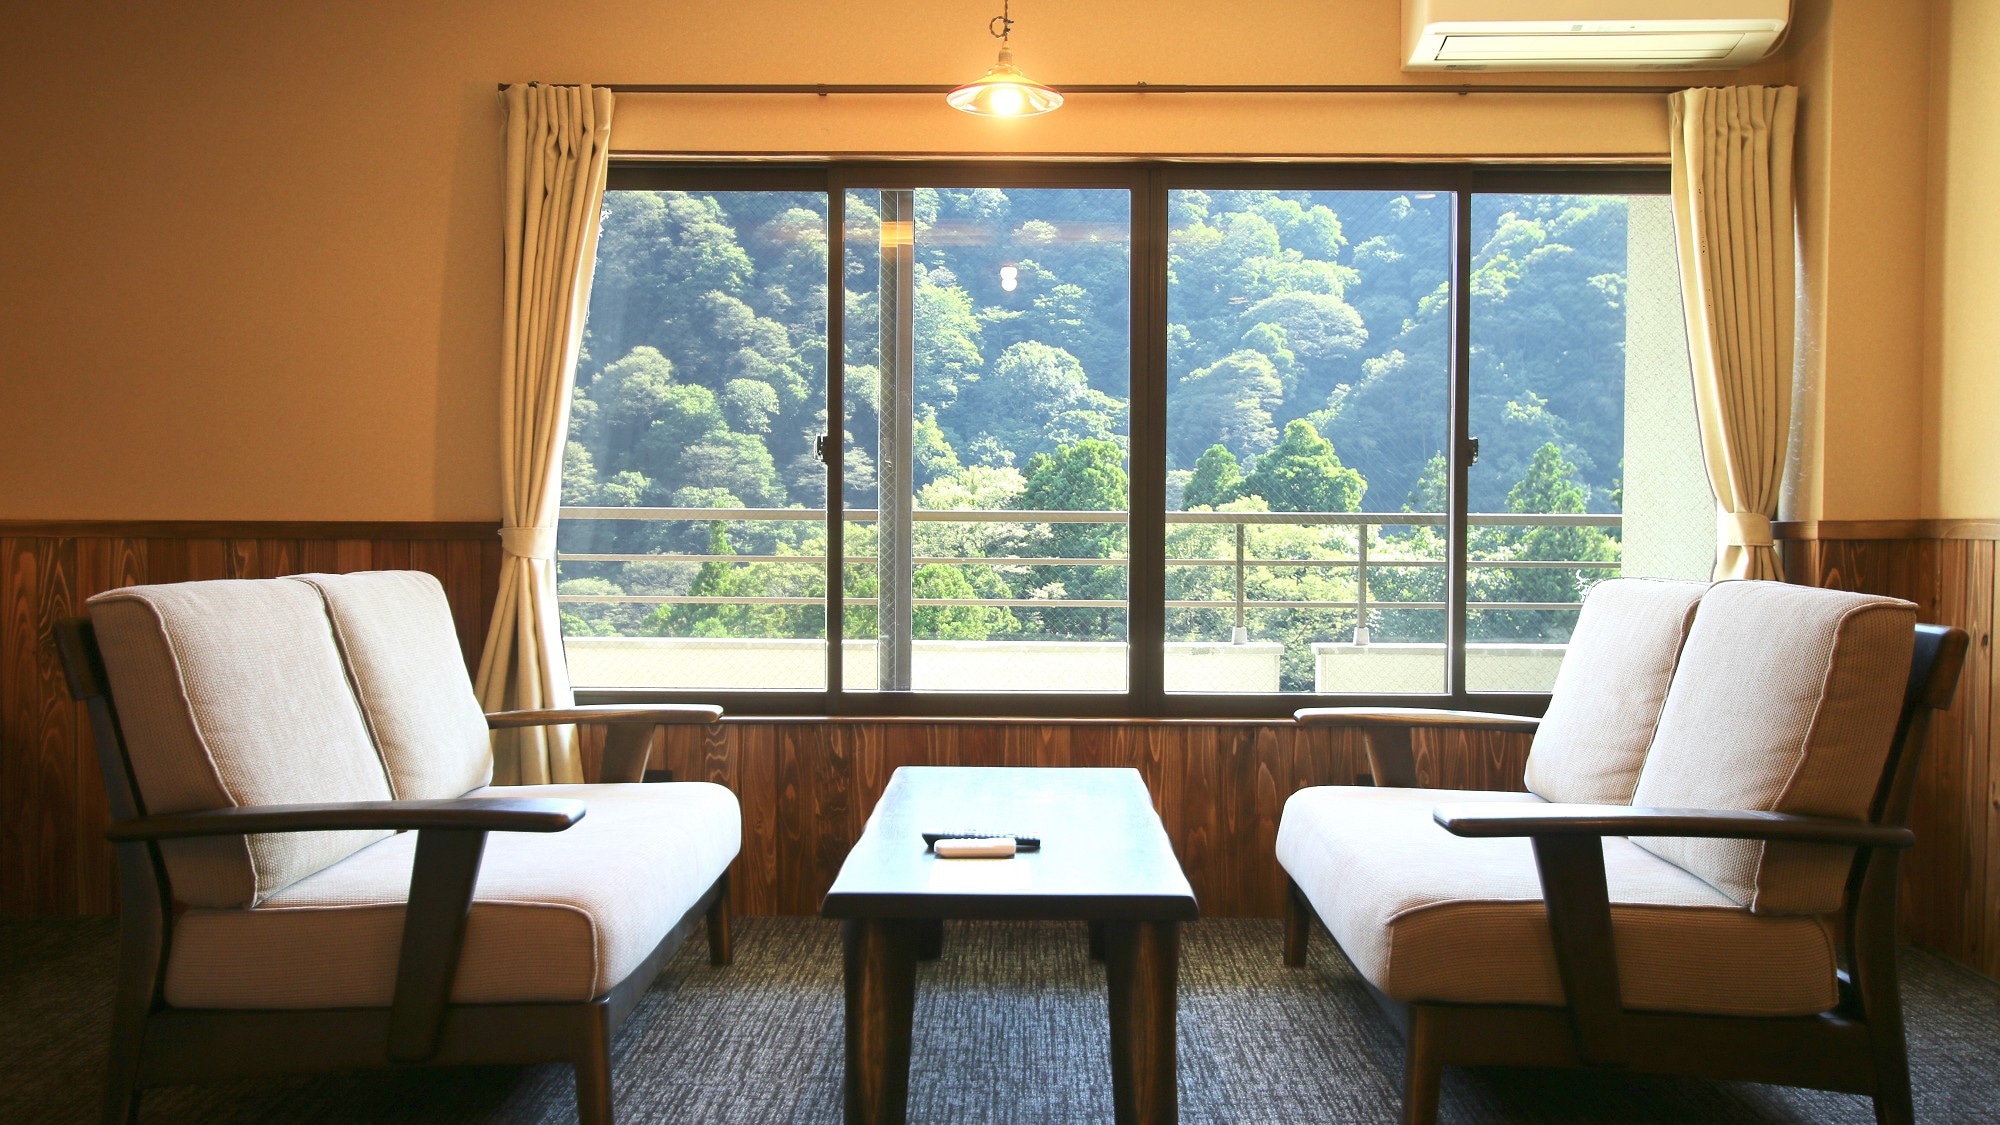 [Semi-suite] 2 tempat tidur di kamar bergaya Jepang yang direnovasi pada musim gugur 2009 Contoh 53 meter persegi dengan shower